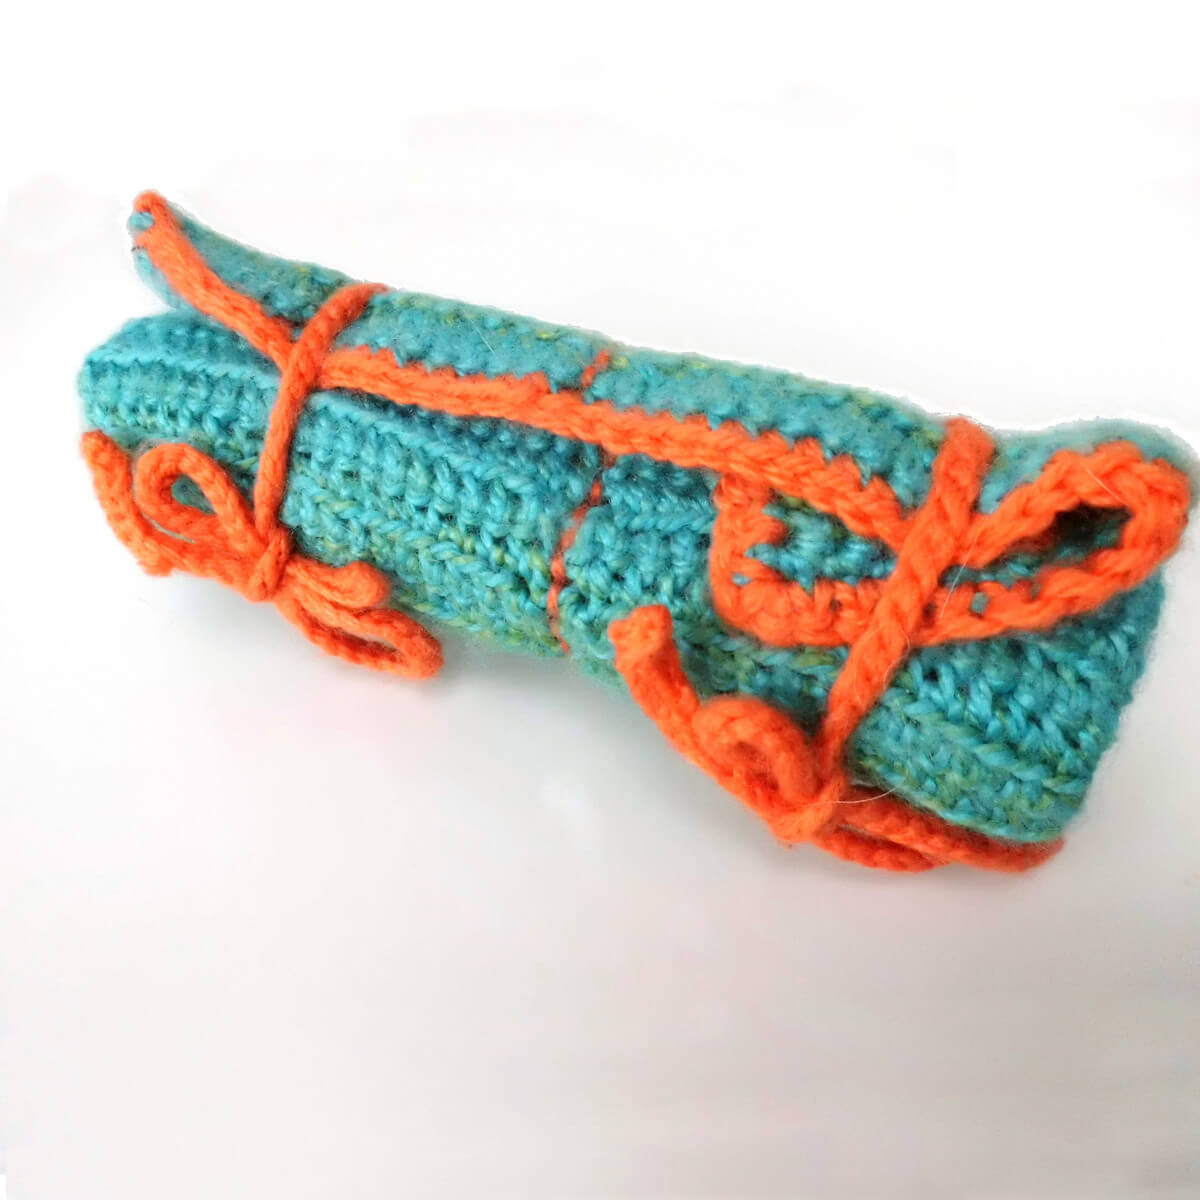 roll it up & go crochet hook case - free pattern - La Visch Designs